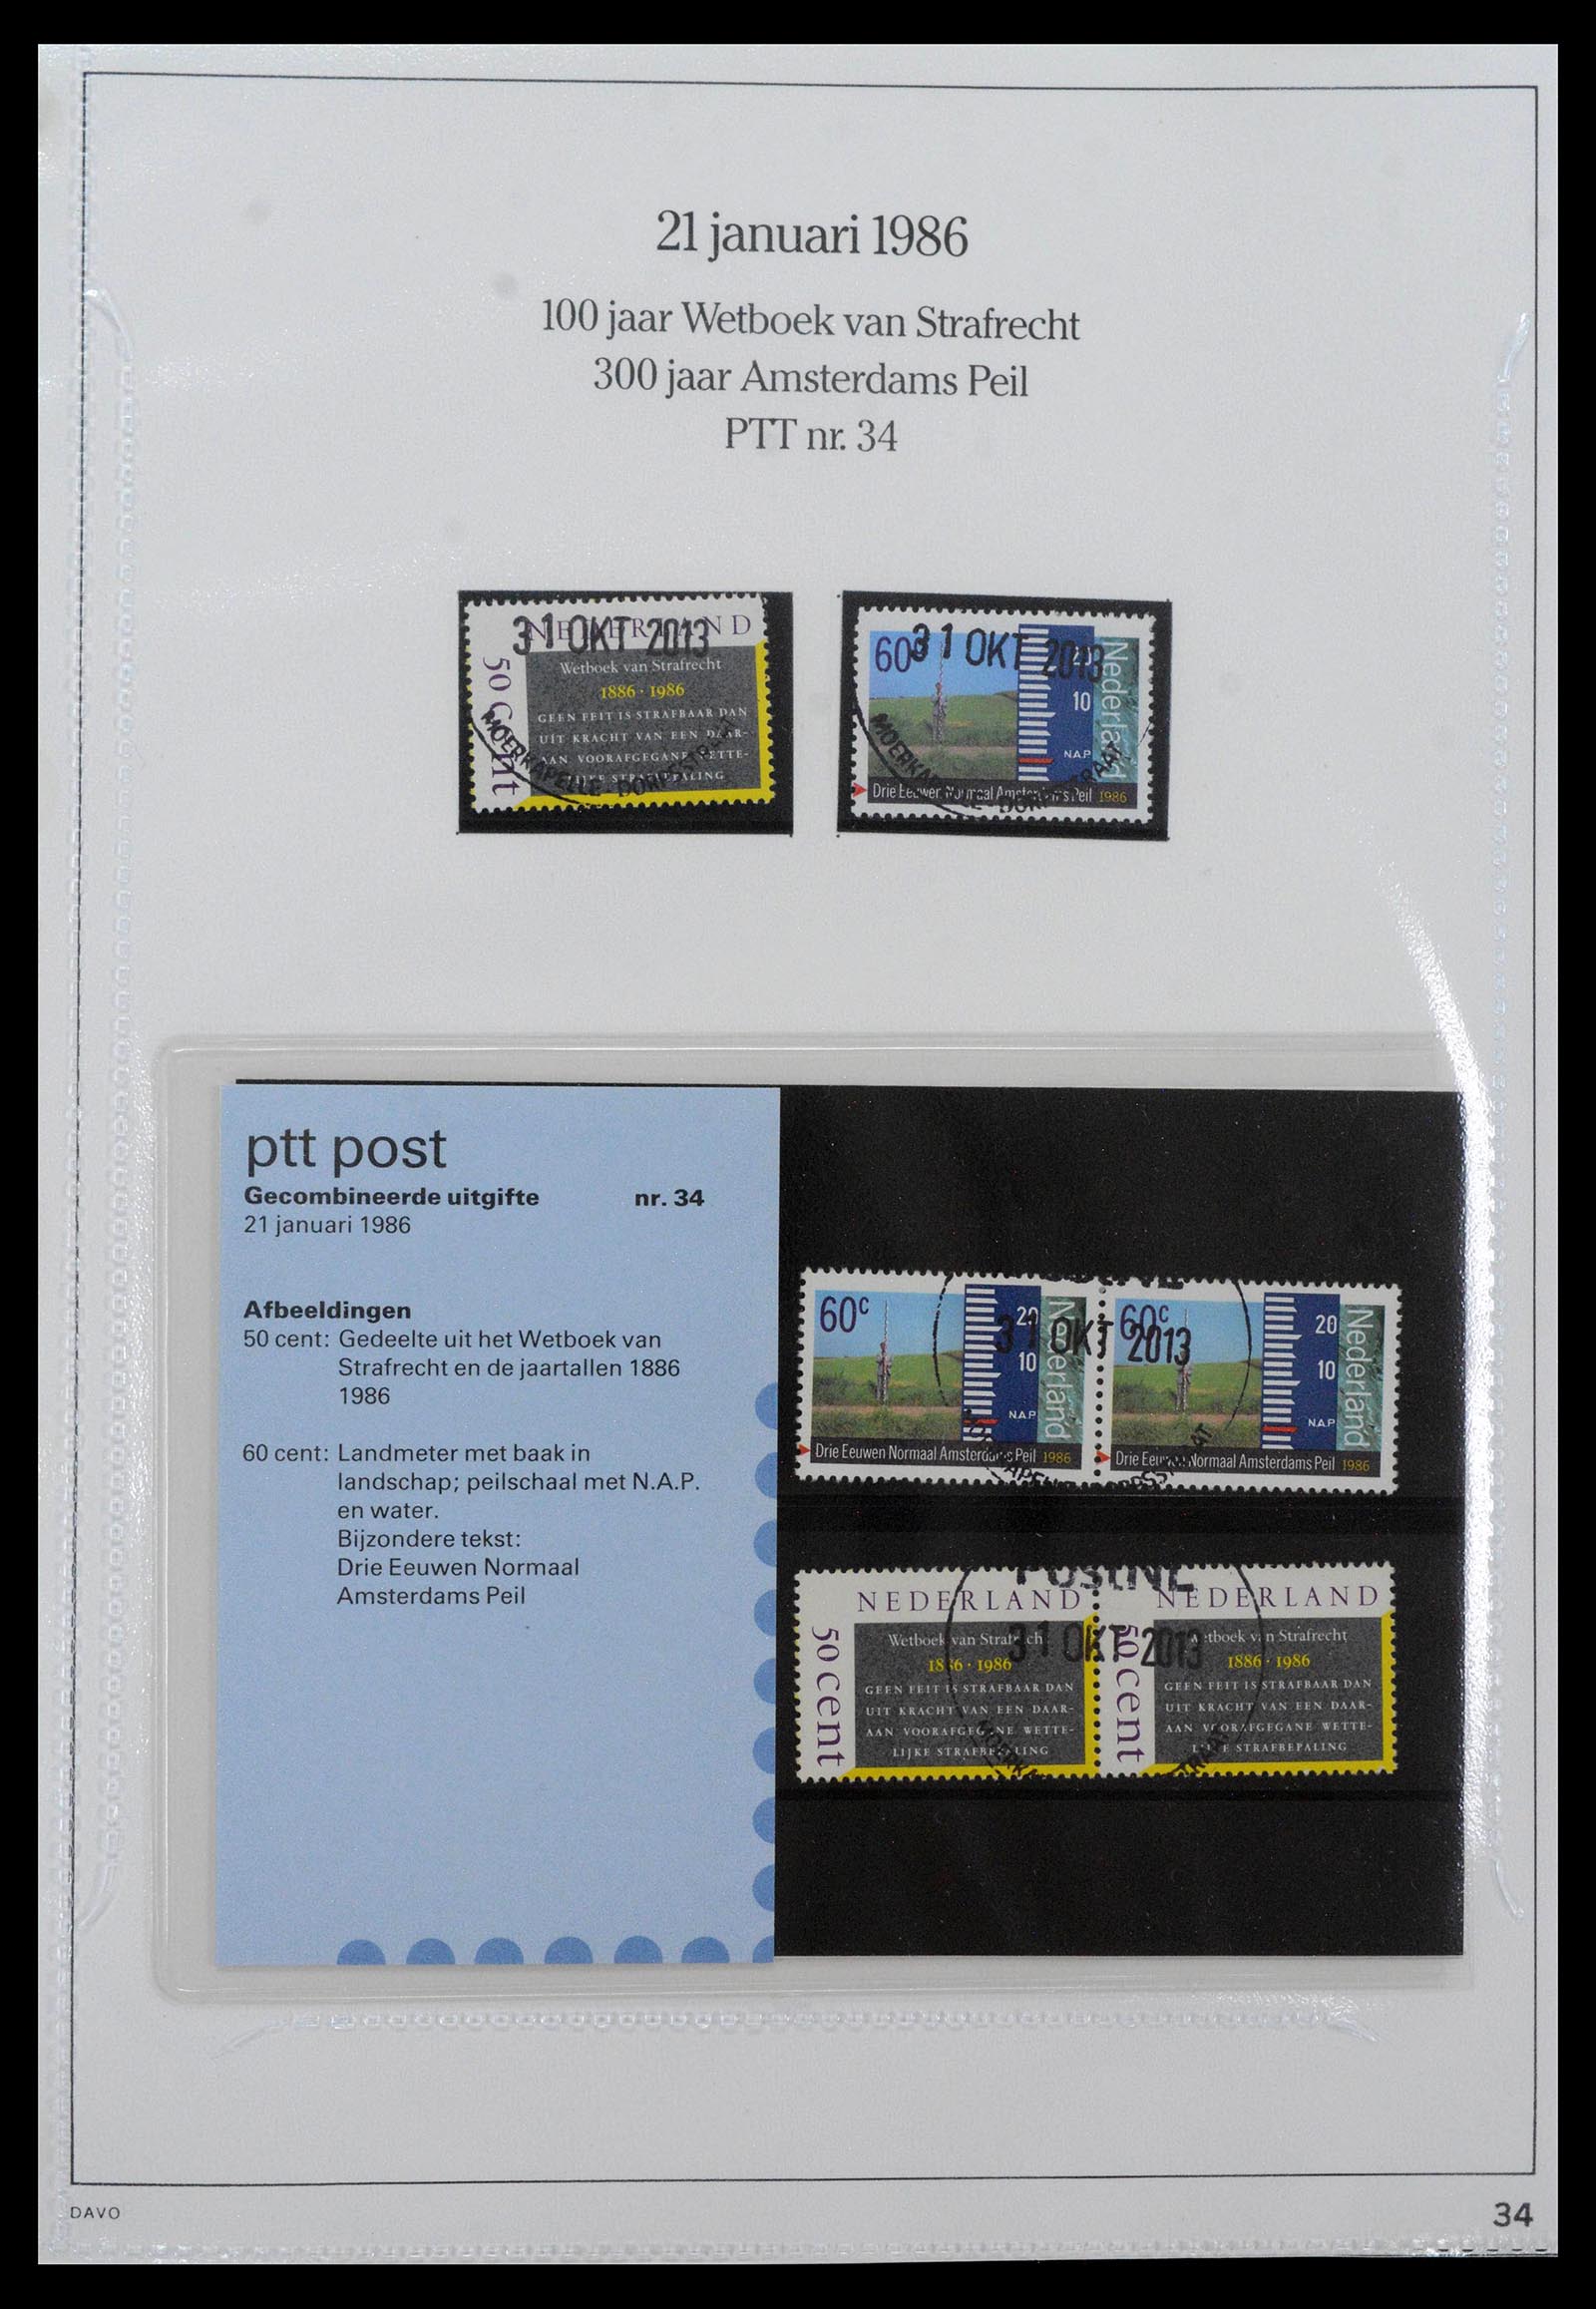 39121 0034 - Stamp collection 39121 Netherlands presentationpacks 1982-2001.